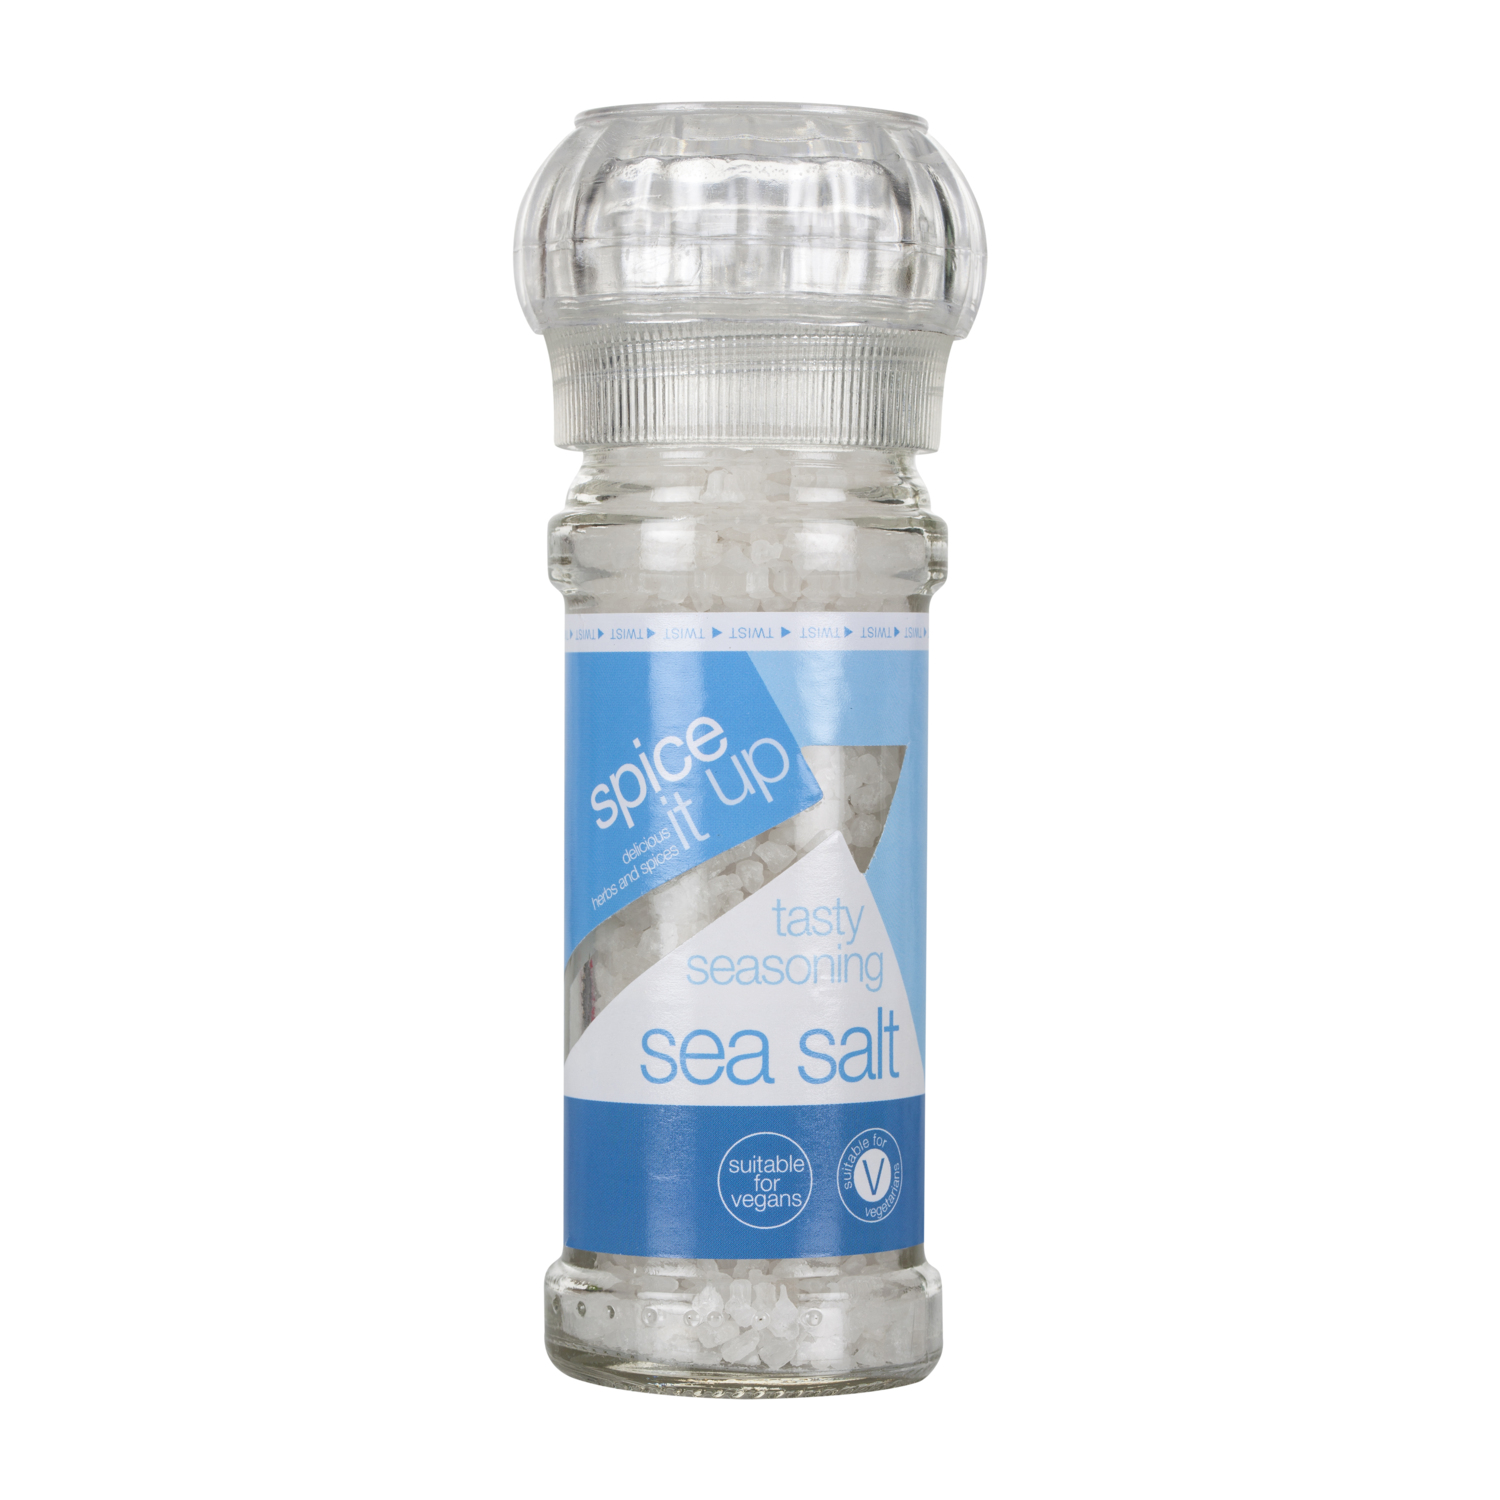 Sea Salt Grinder with Sea Salt Image